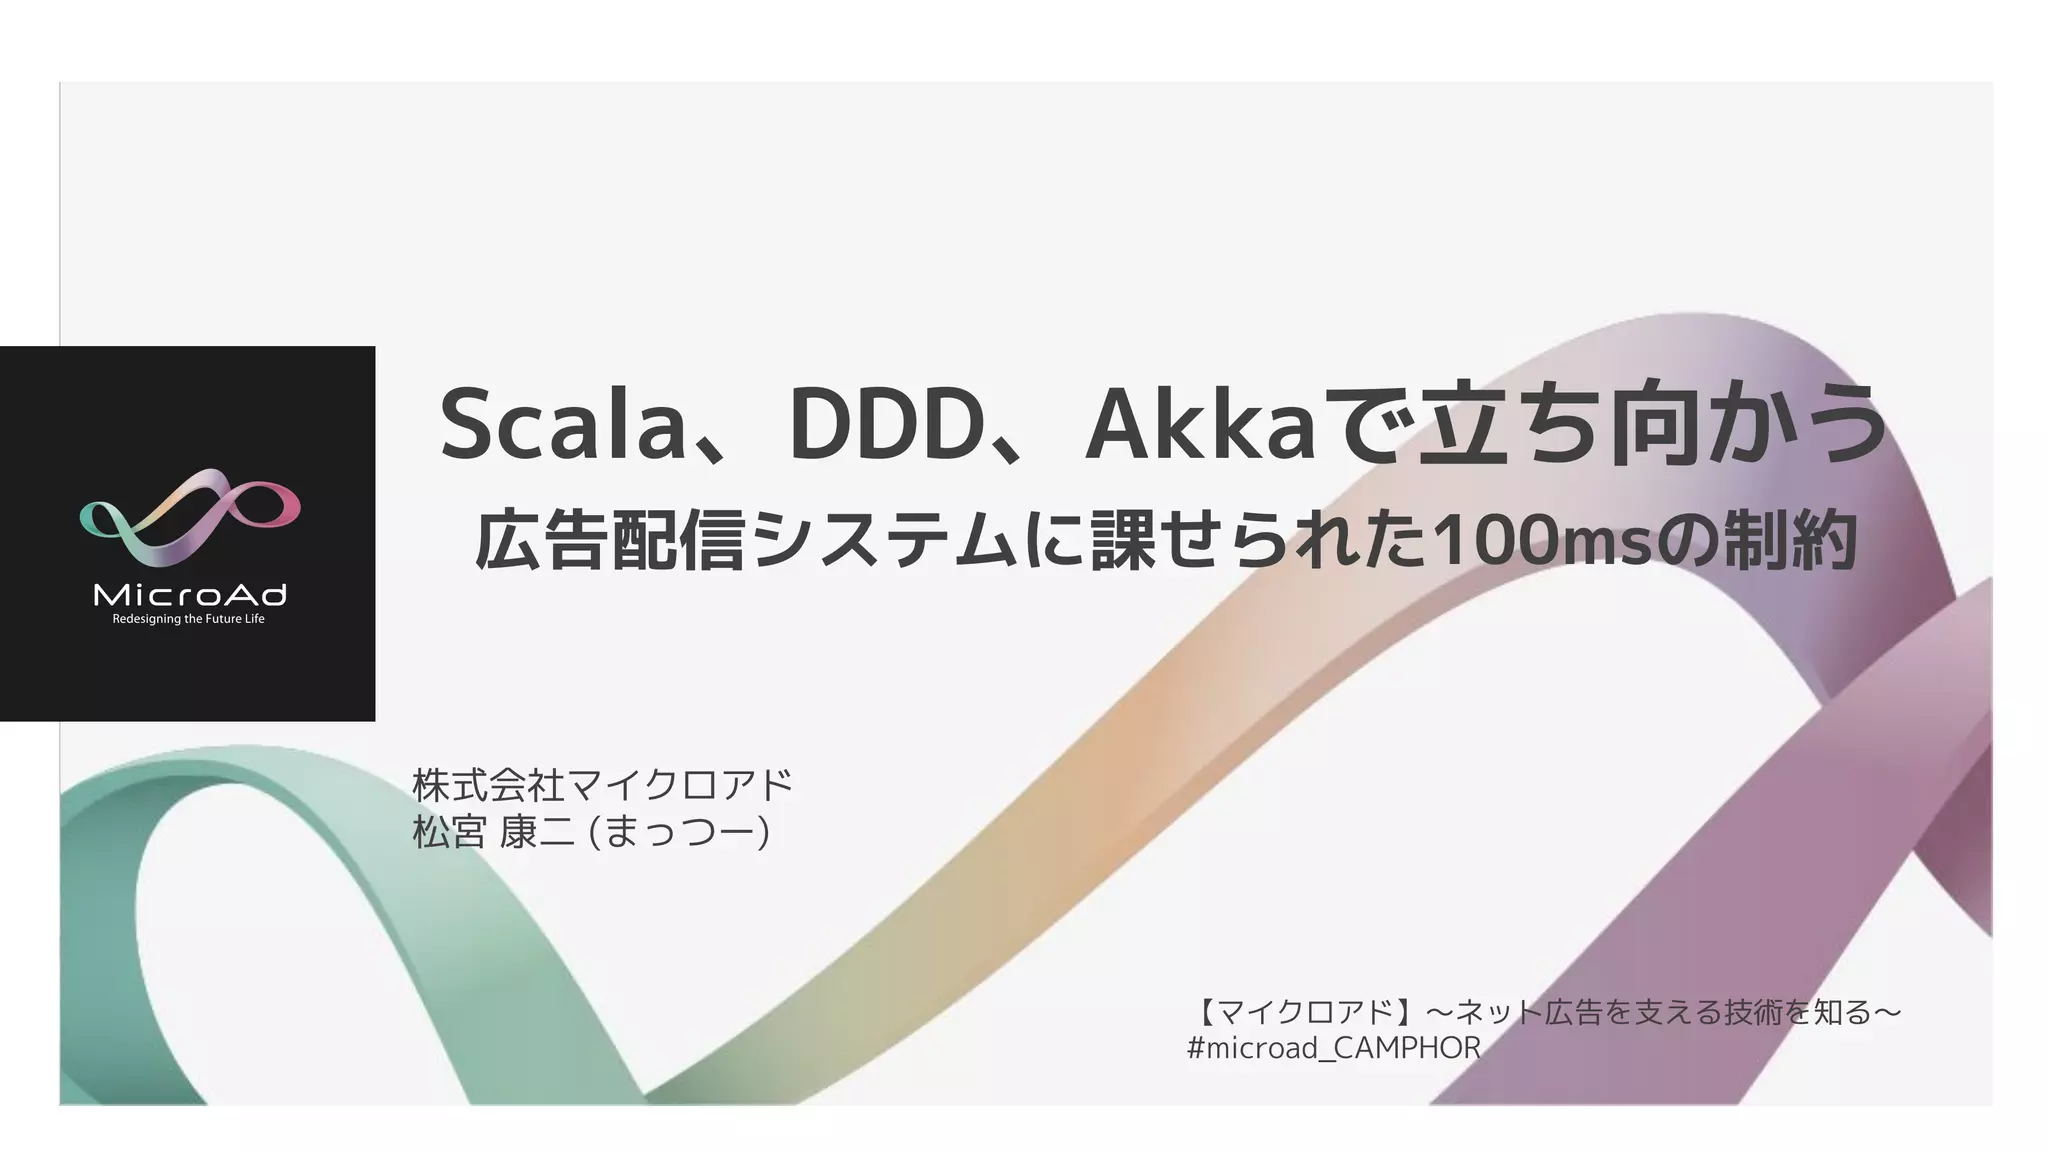 Scala、DDD、Akkaで立ち向かう 〜広告配信システムに課せられた100msの制約〜